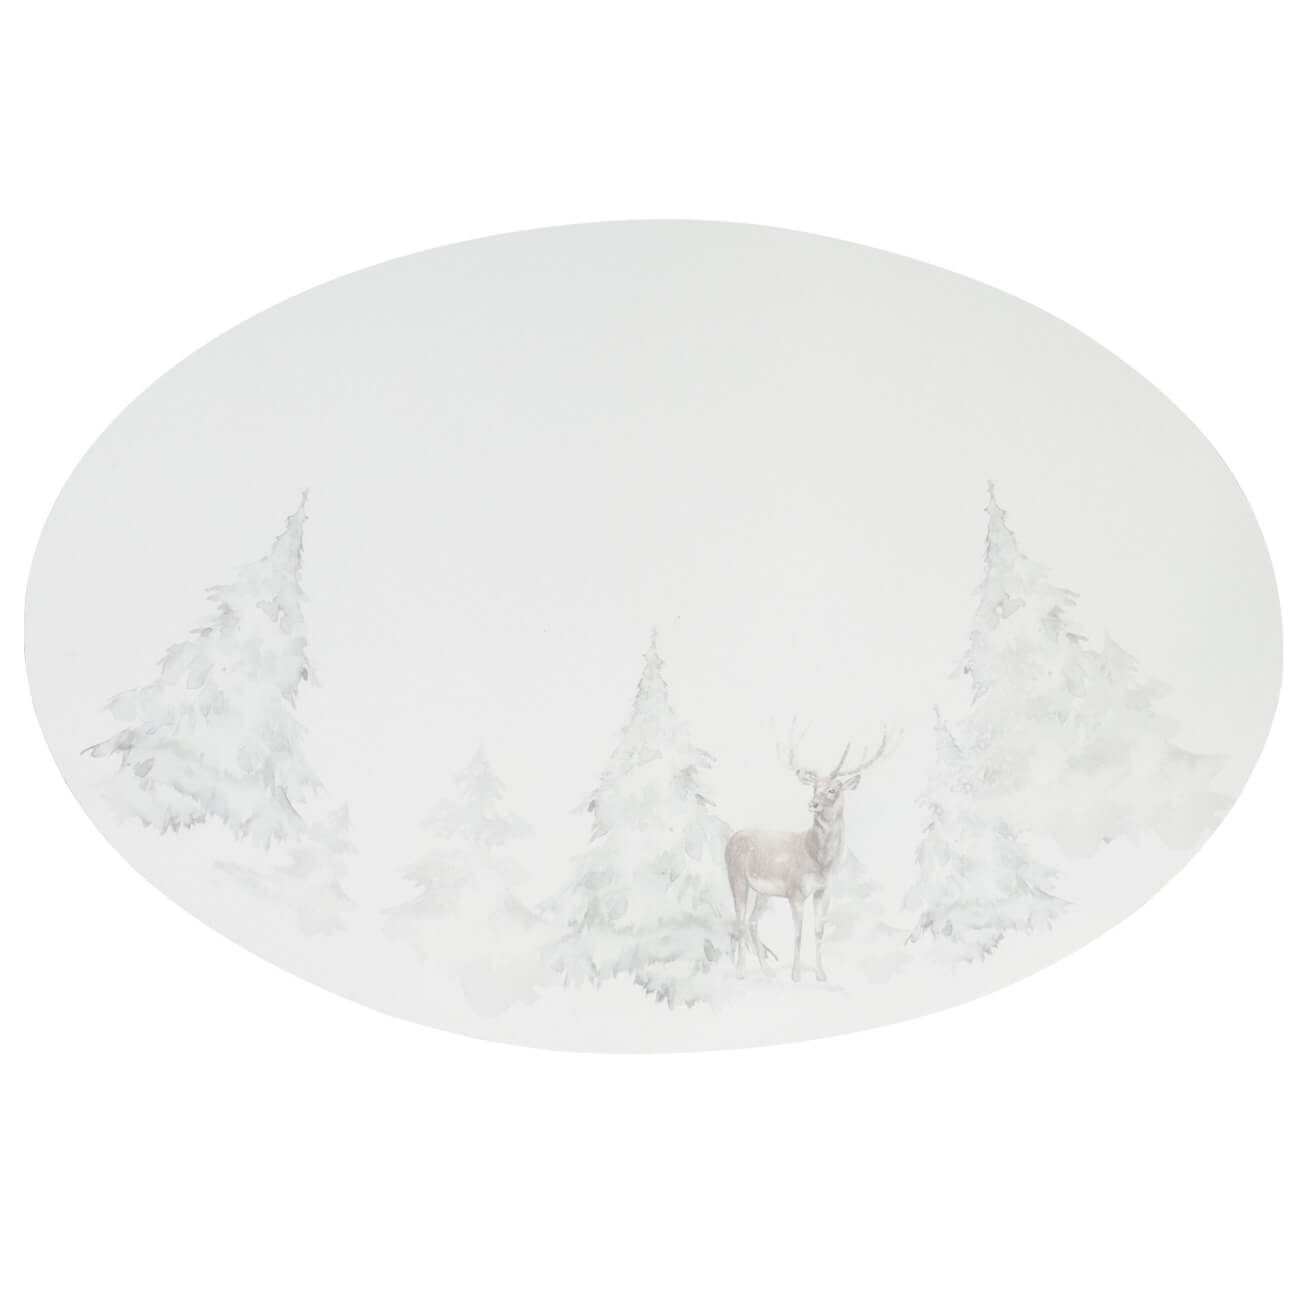 Салфетка под приборы, 30х45 см, ПВХ, овальная, белая, Олень в снежном лесу, Rock print салфетка под приборы 30х45 см пвх прямоугольная белая серебристые капли rock